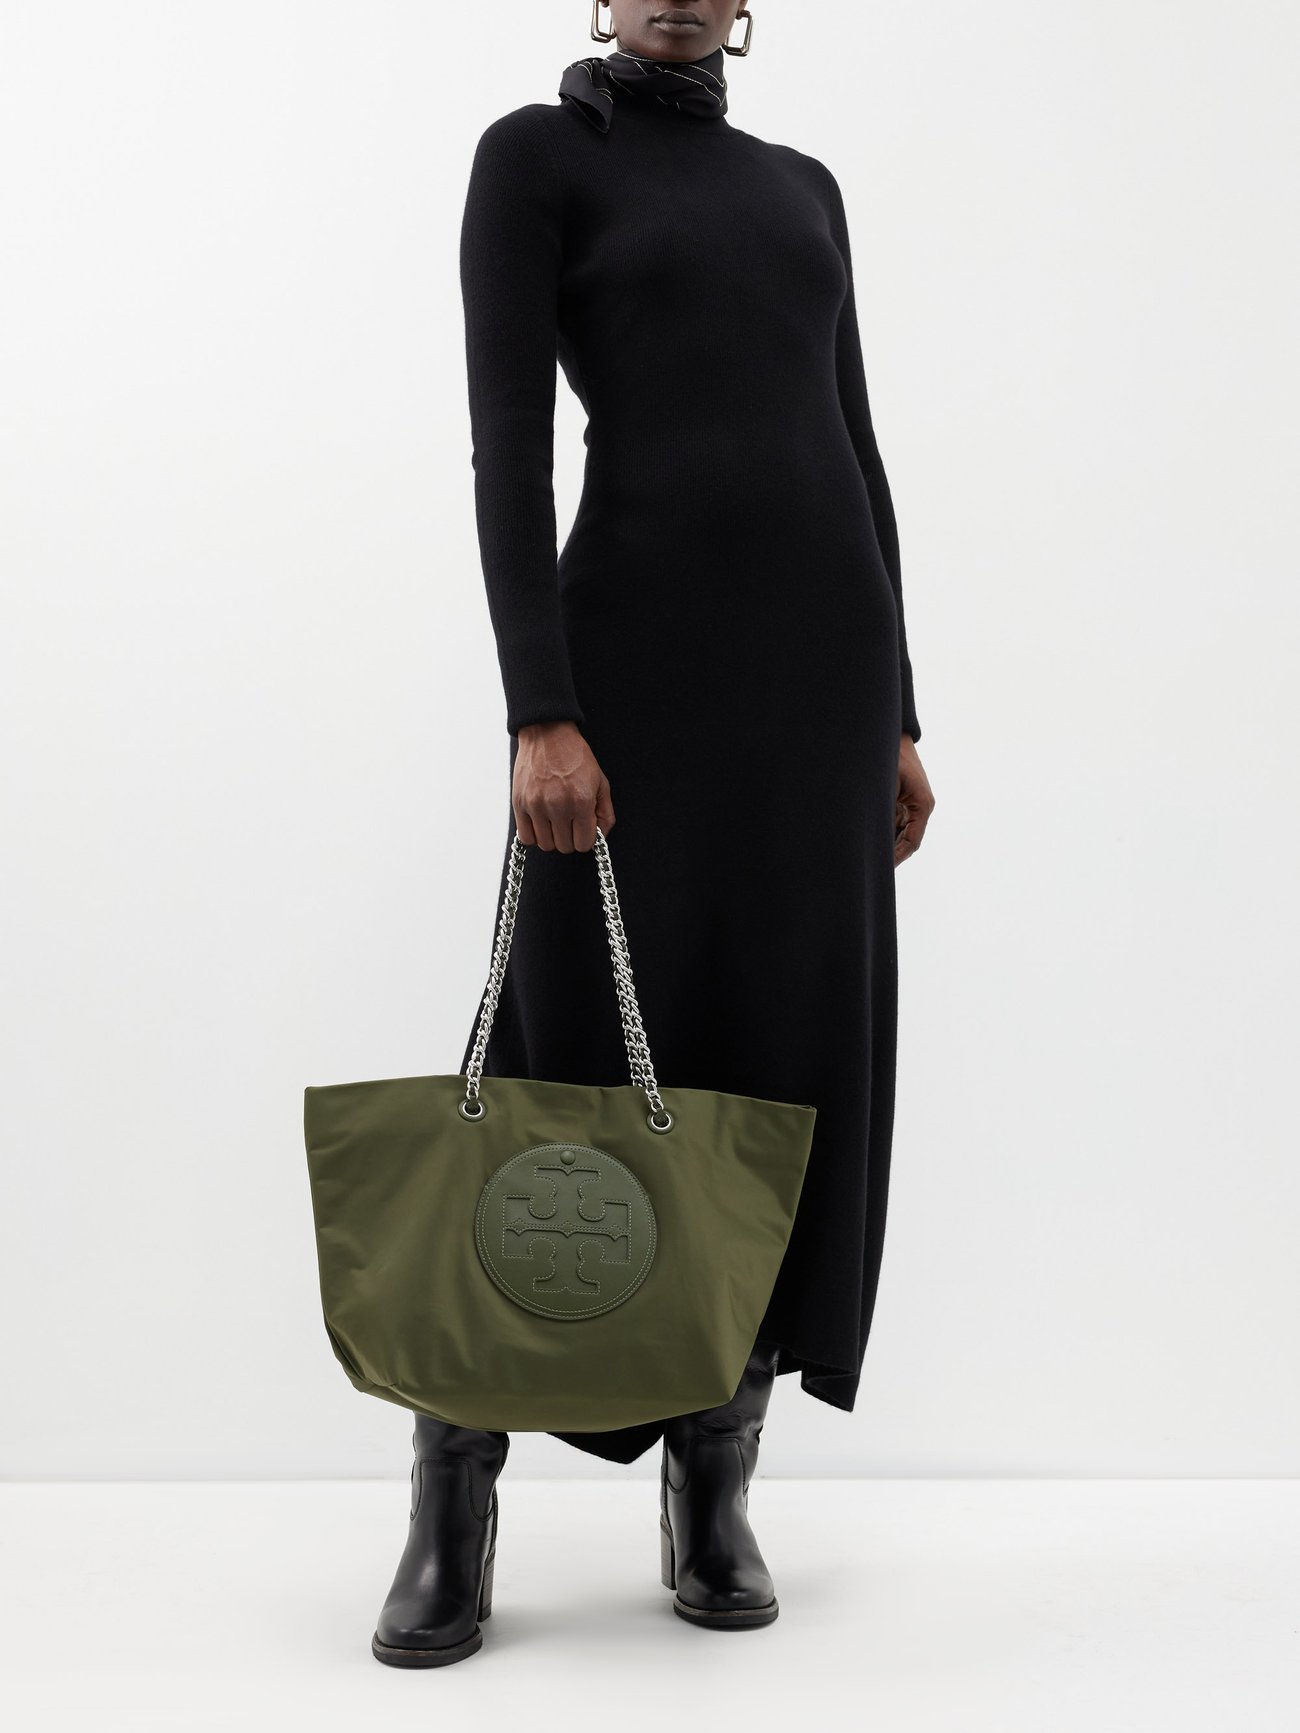 Tory Burch Ella Chain Tote! Nylon bags make me happy : r/handbags